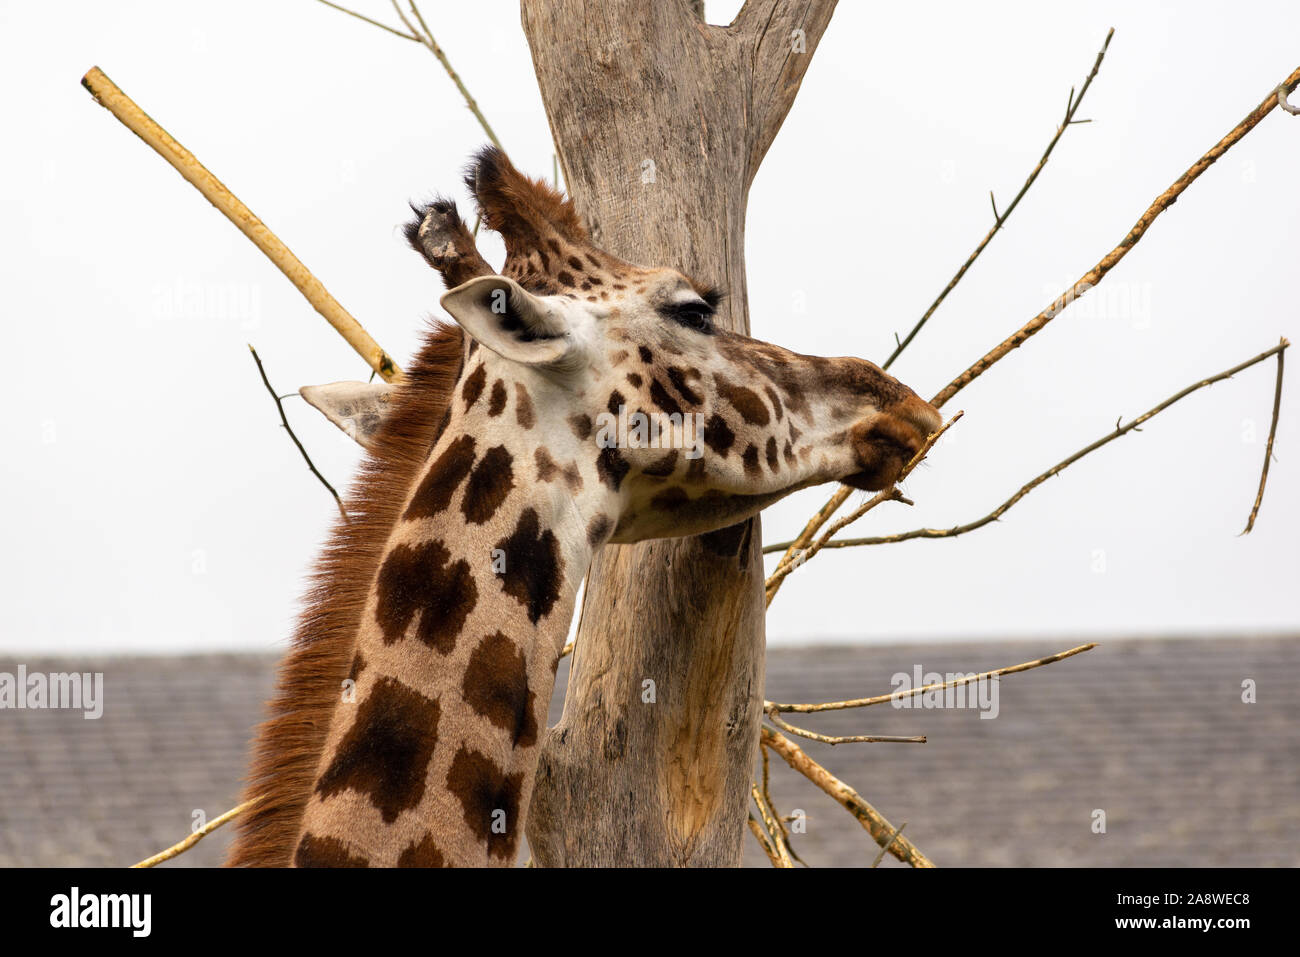 Giraffe feeding at London Zoo Stock Photo